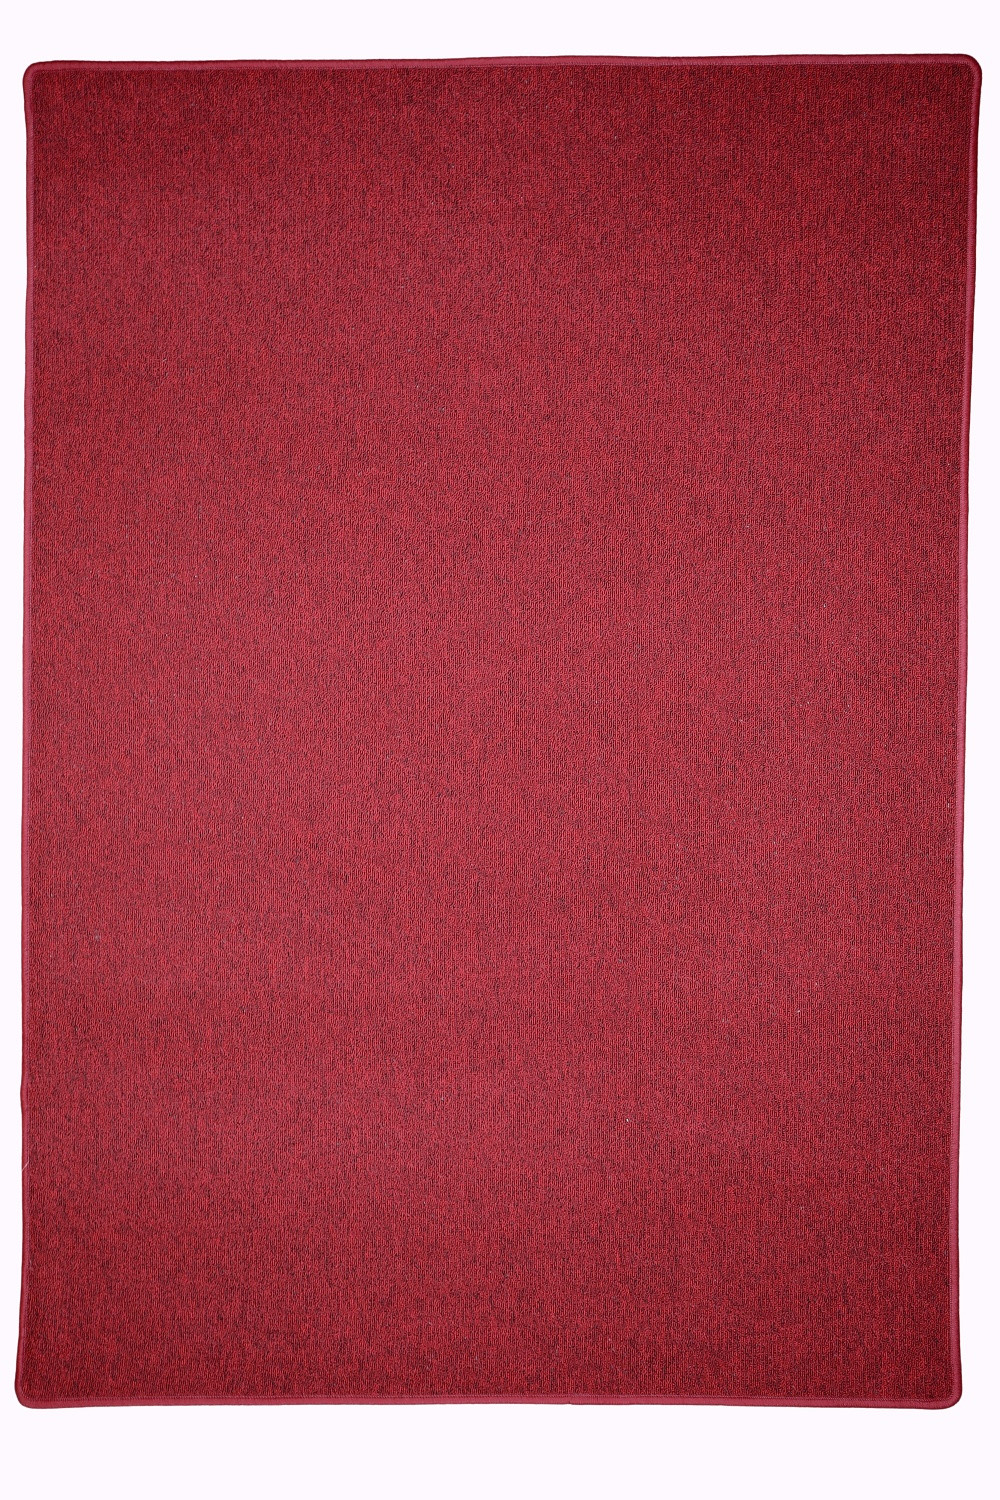 Kusový koberec Astra červená - 60x110 cm Vopi koberce 